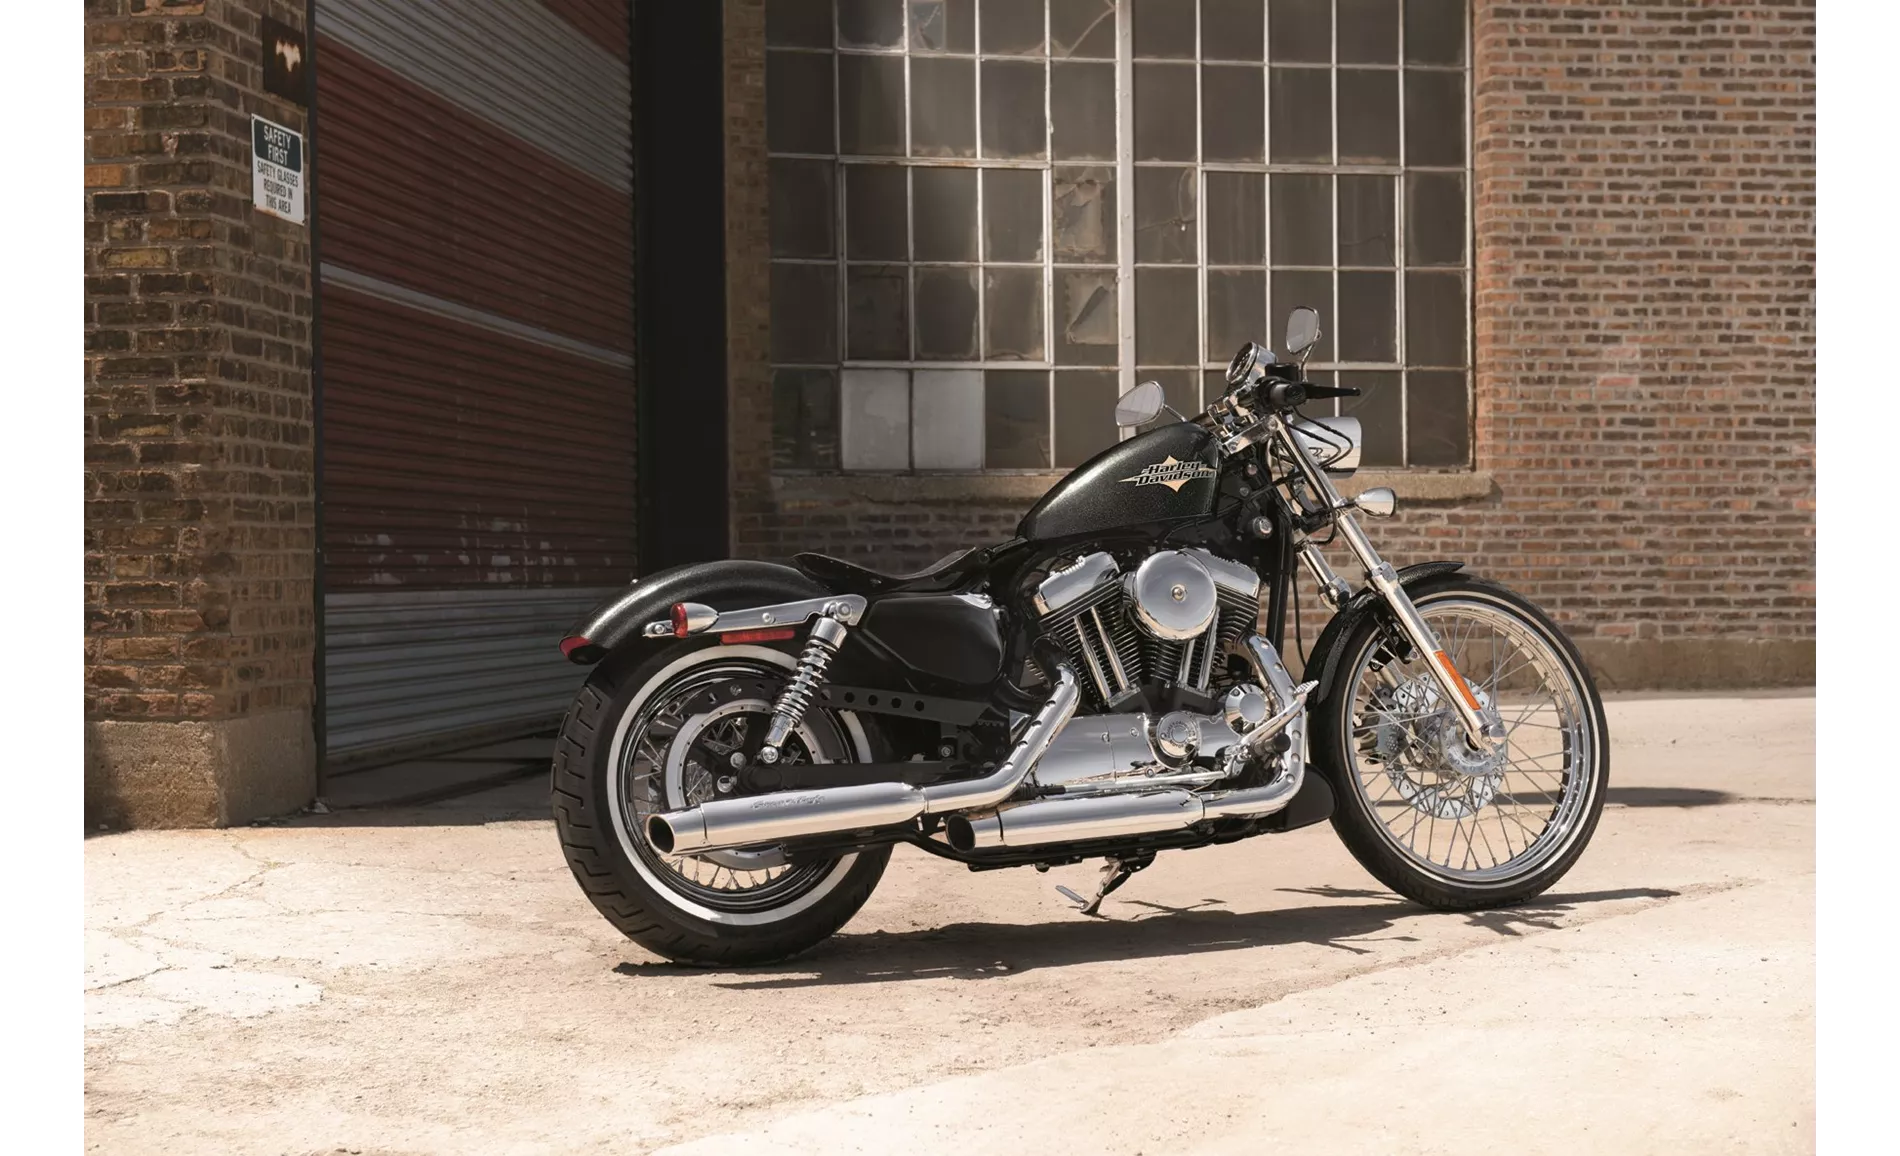 Harley-Davidson Sportster XL 1200 V Seventy-Two 2016